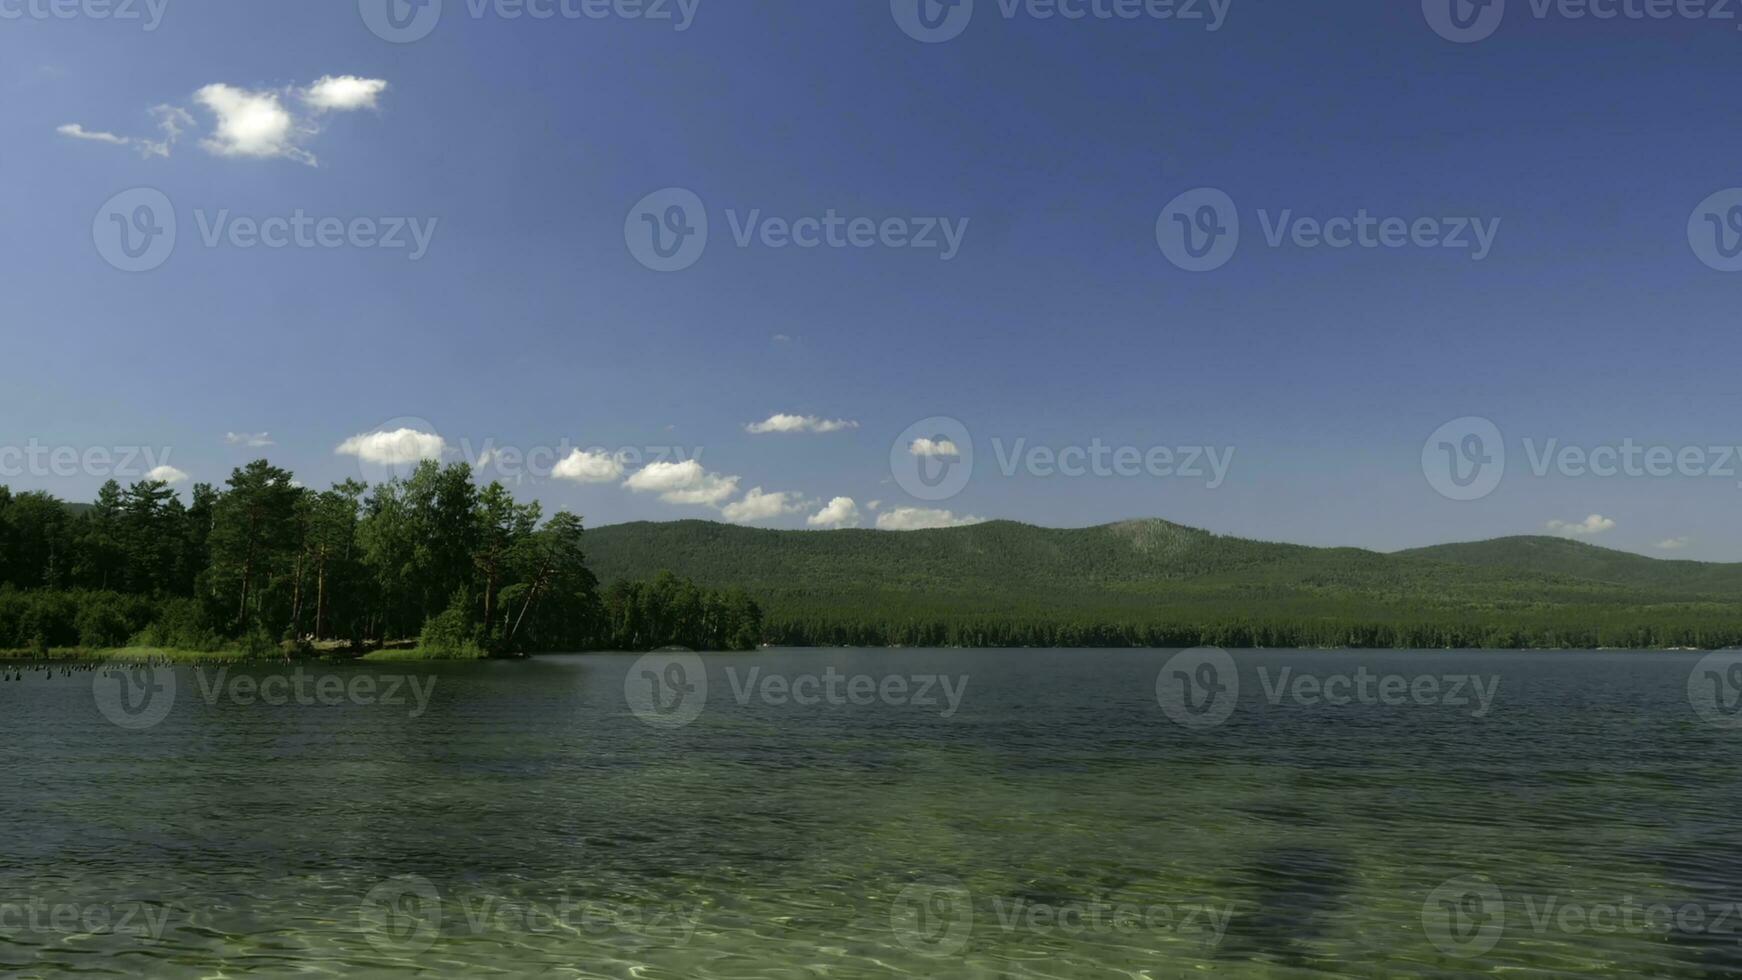 bellissimo lago Visualizza. estate paesaggio con blu cielo, alberi e lago, lasso di tempo foto